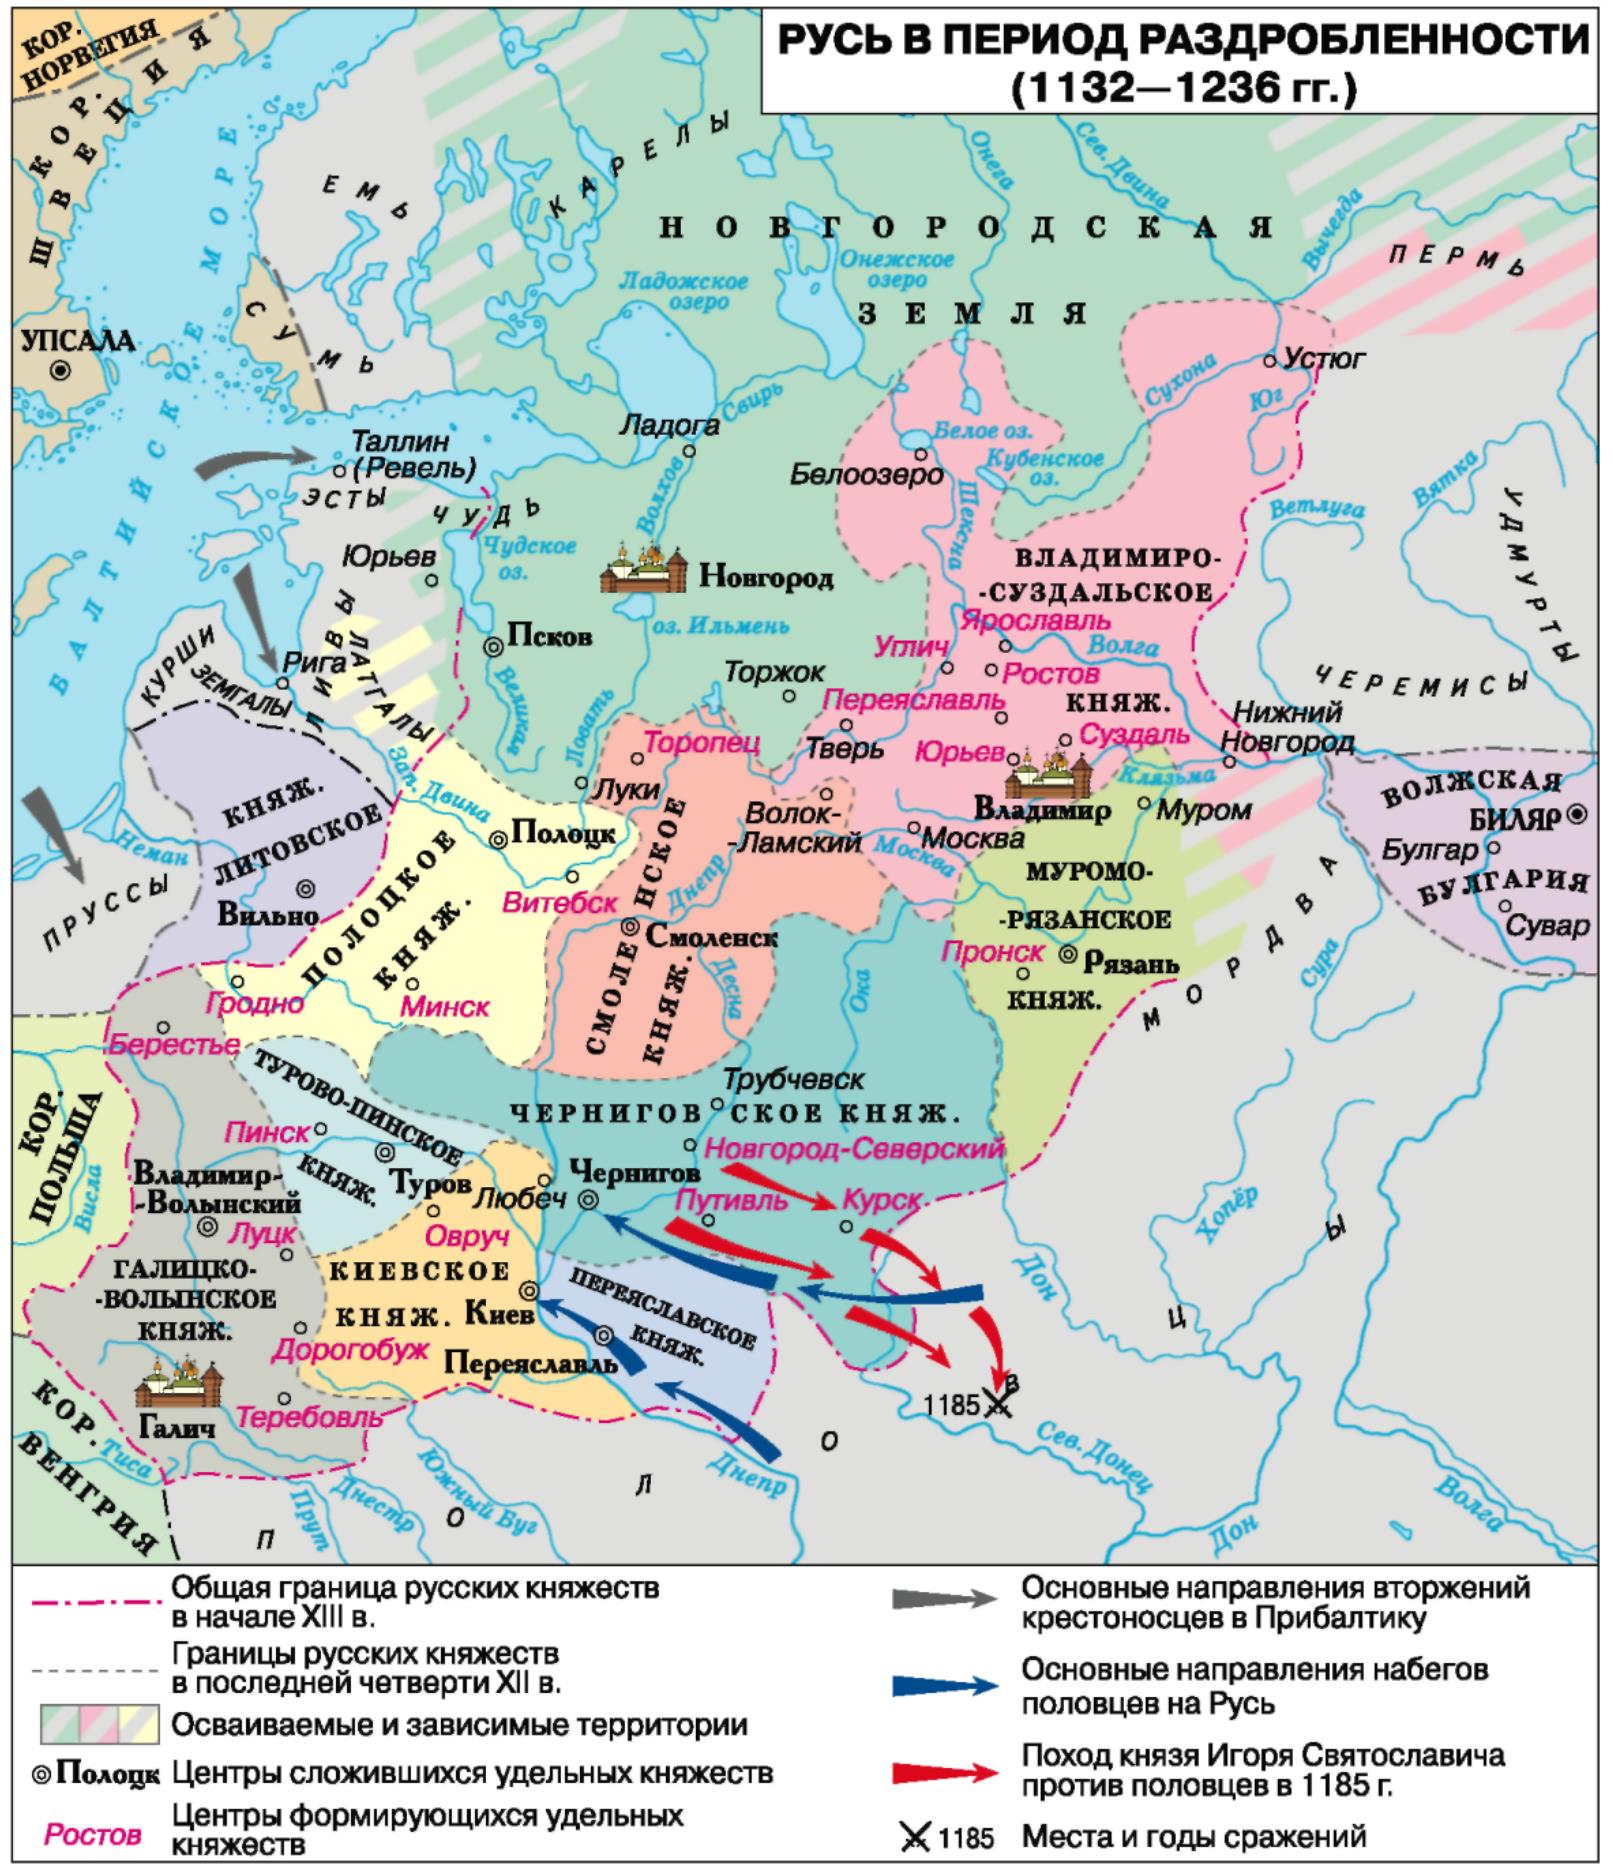 Карта феодальная раздробленность Руси в 12-13 веках